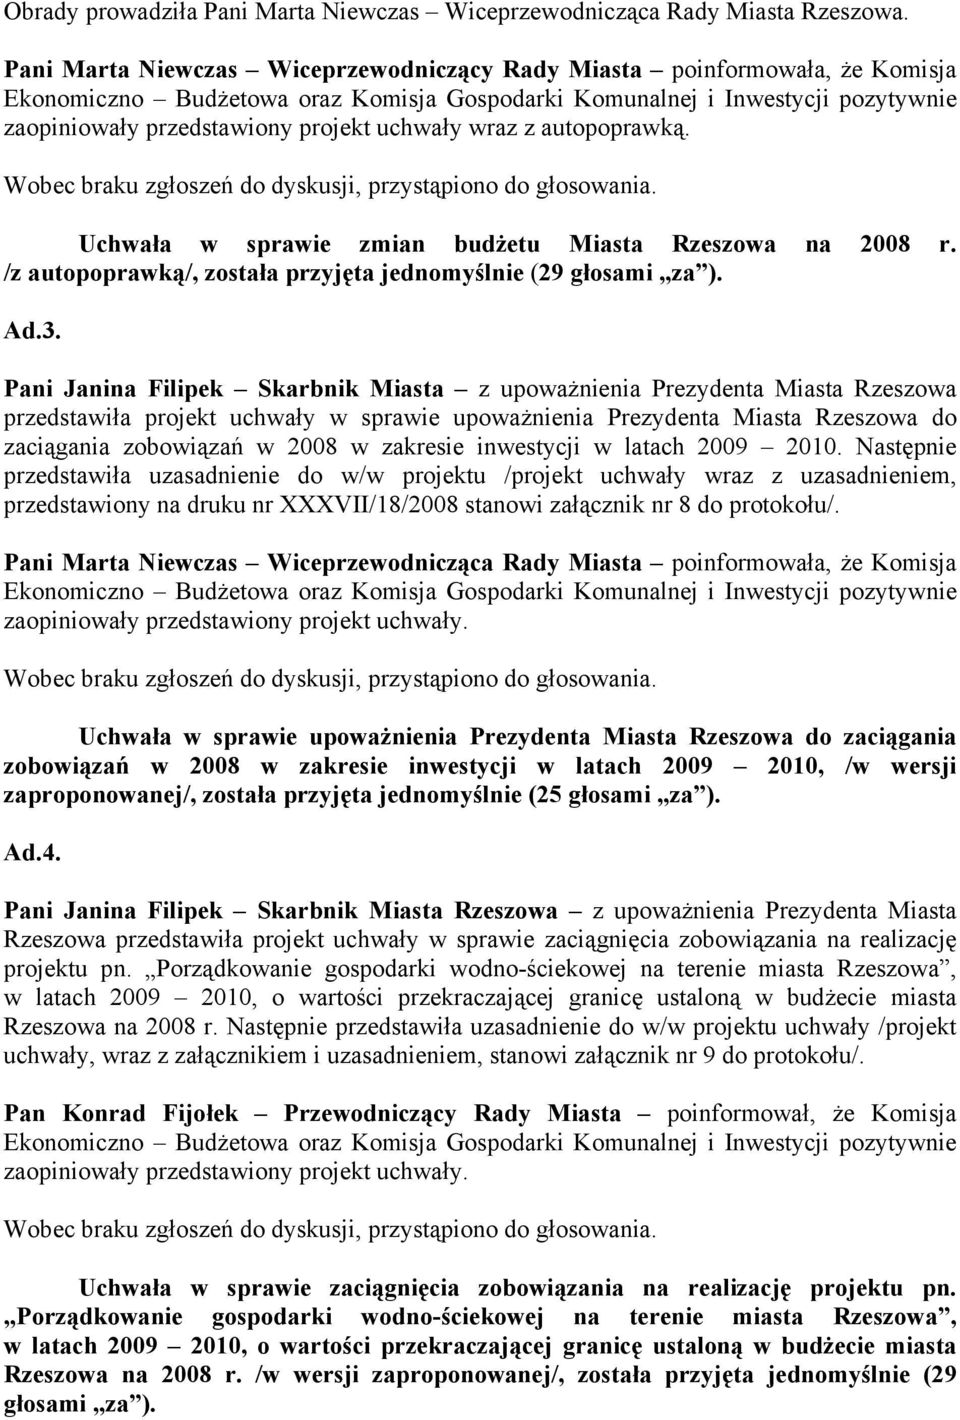 uchwały wraz z autopoprawką. Uchwała w sprawie zmian budżetu Miasta Rzeszowa na 2008 r. /z autopoprawką/, została przyjęta jednomyślnie (29 głosami za ). Ad.3.